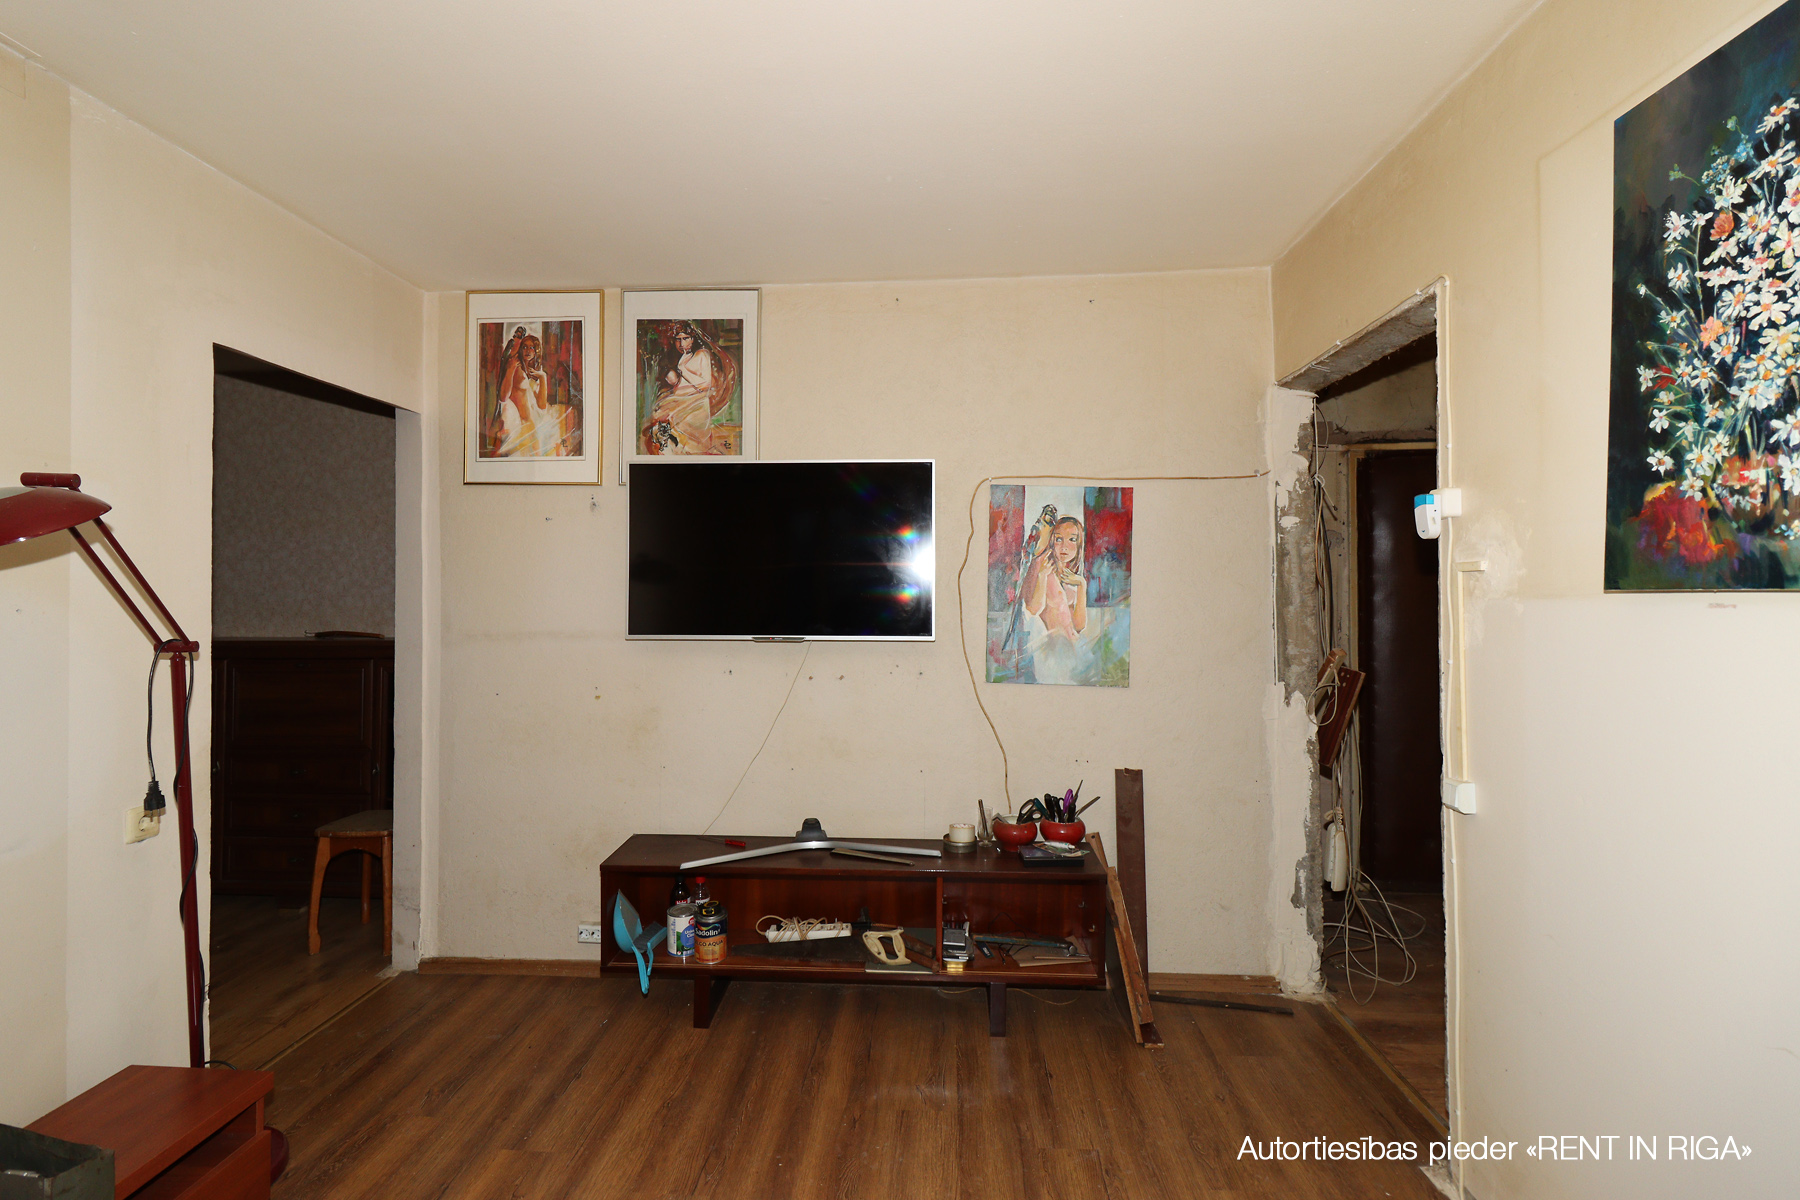 Apartment for sale, Džohara Dudajeva gatve 2 - Image 1